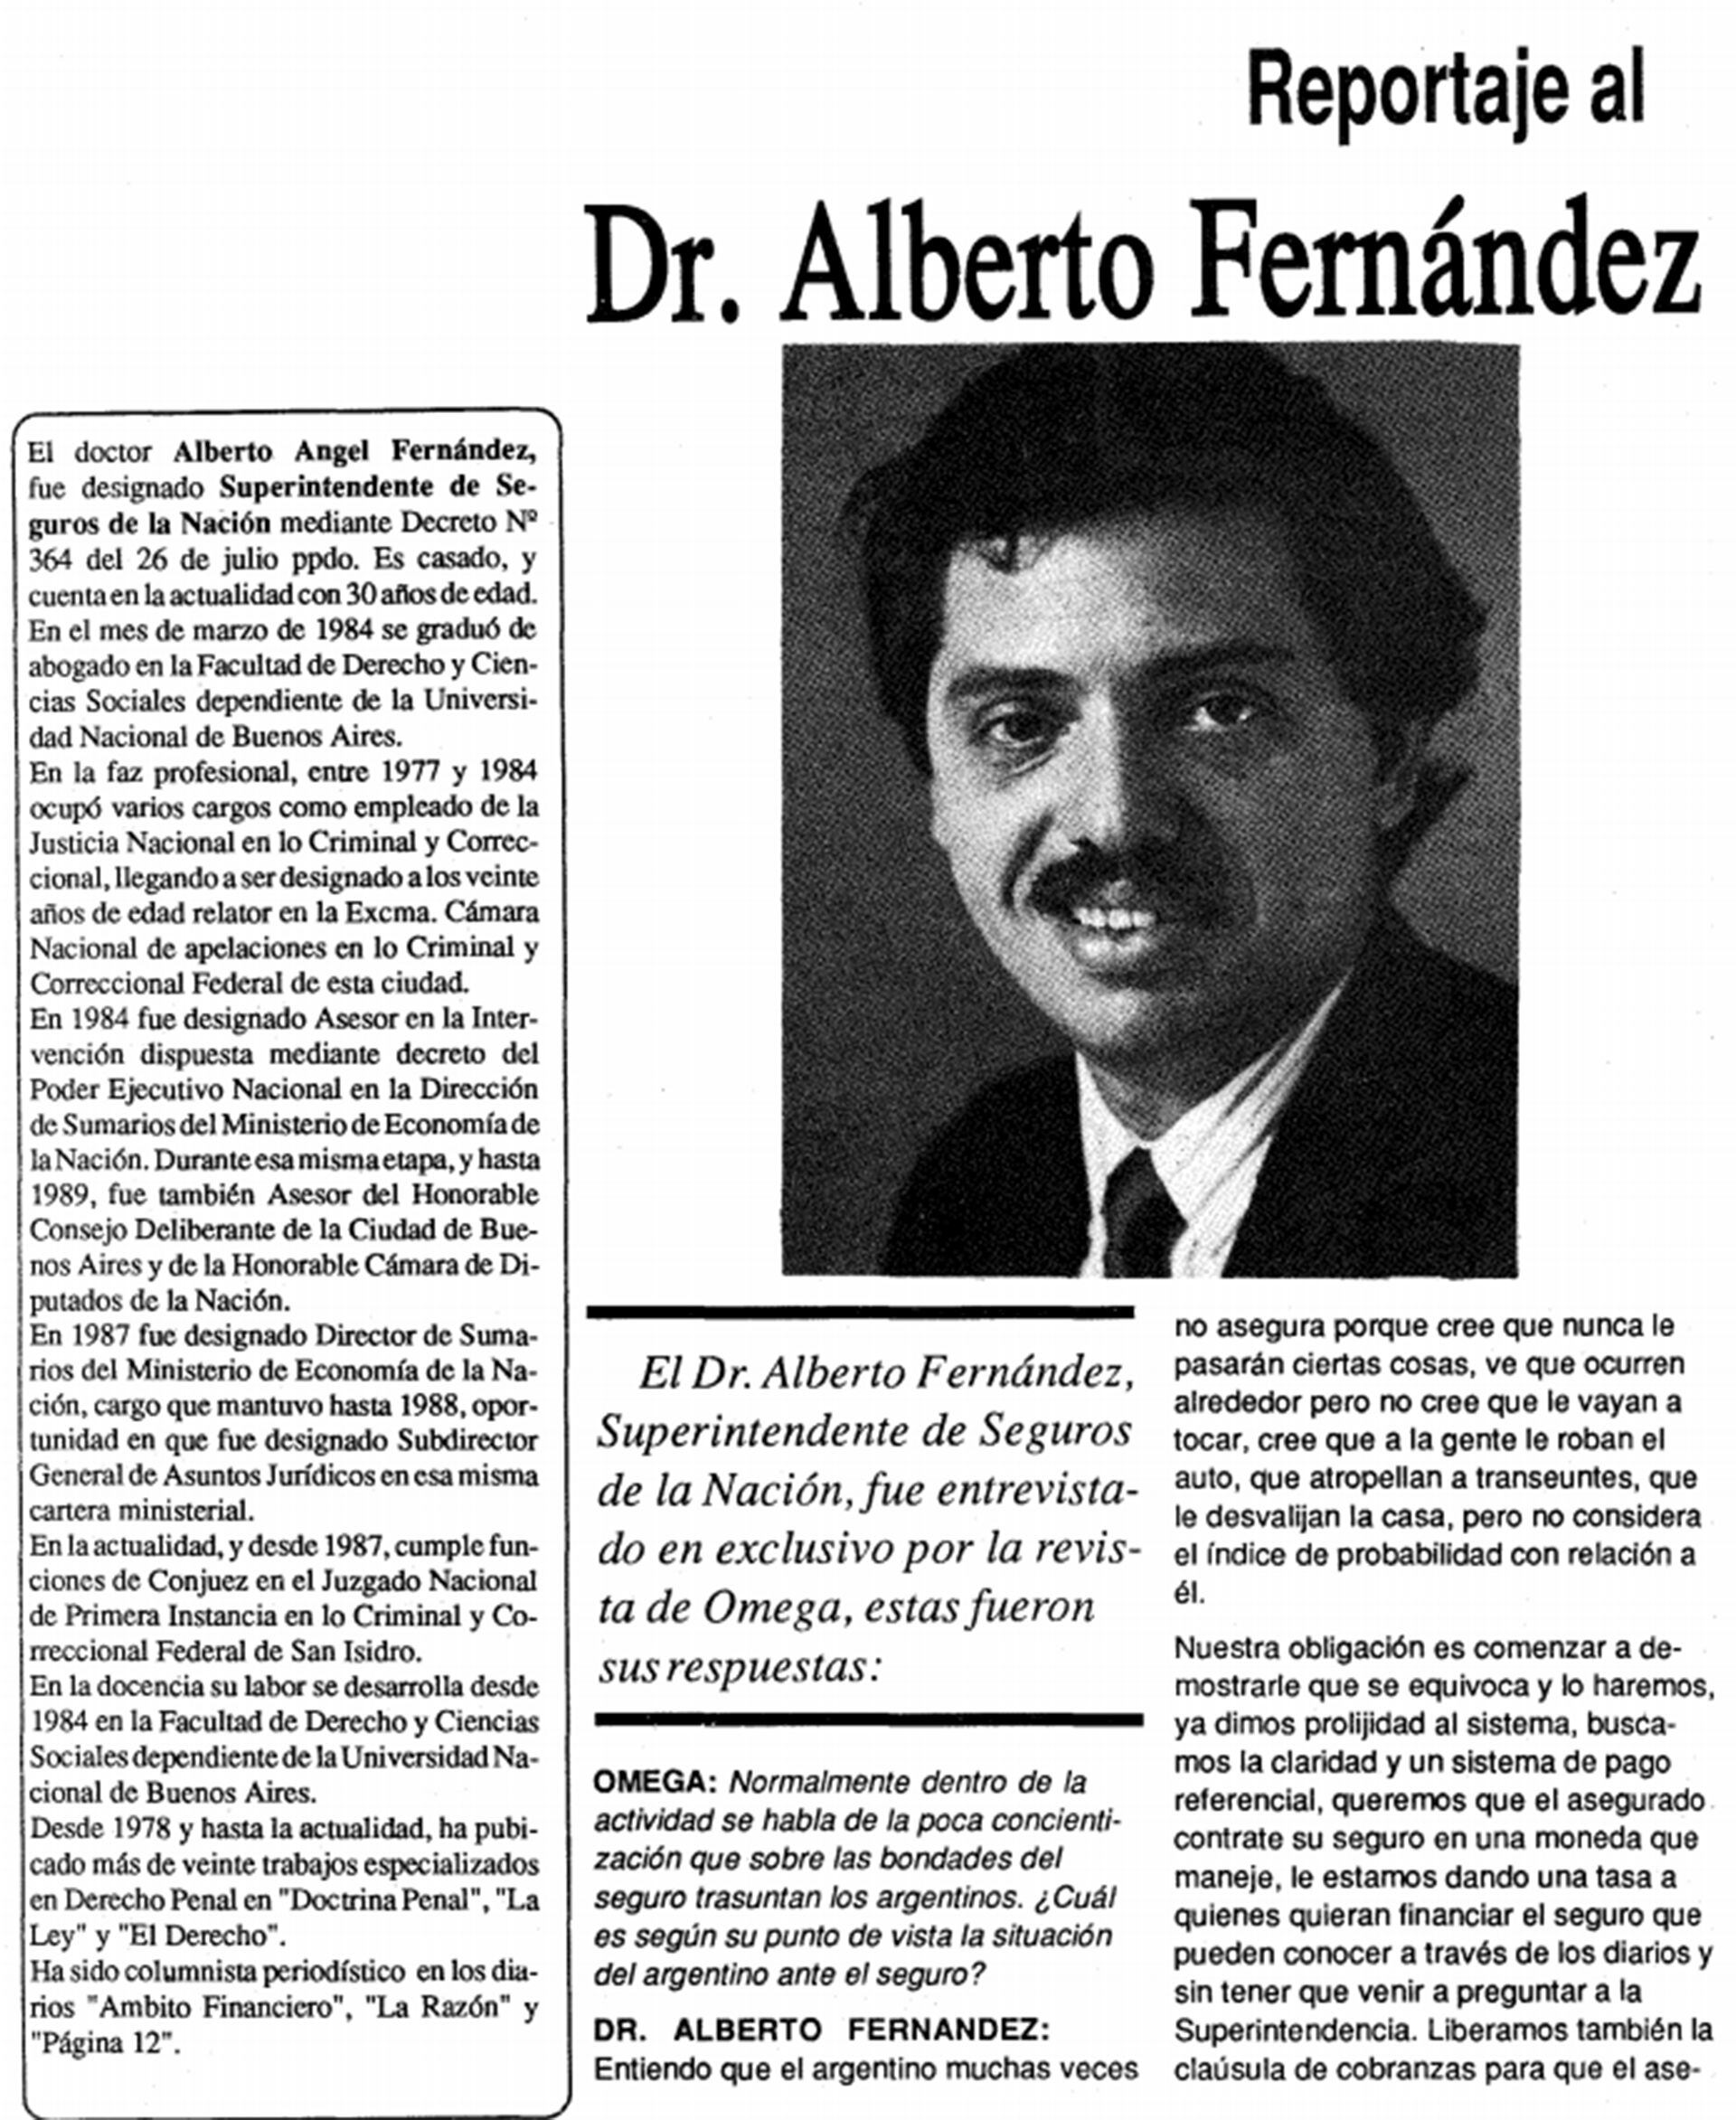 Posteriormente, fue funcionario de Carlos Saúl Menem. Con solo 30 años, fue designado superintendente de Seguros de la Nación, cargo que ocupó desde 1989 hasta 1995, cuando renunció en desacuerdo con las políticas del mandatario riojano. 